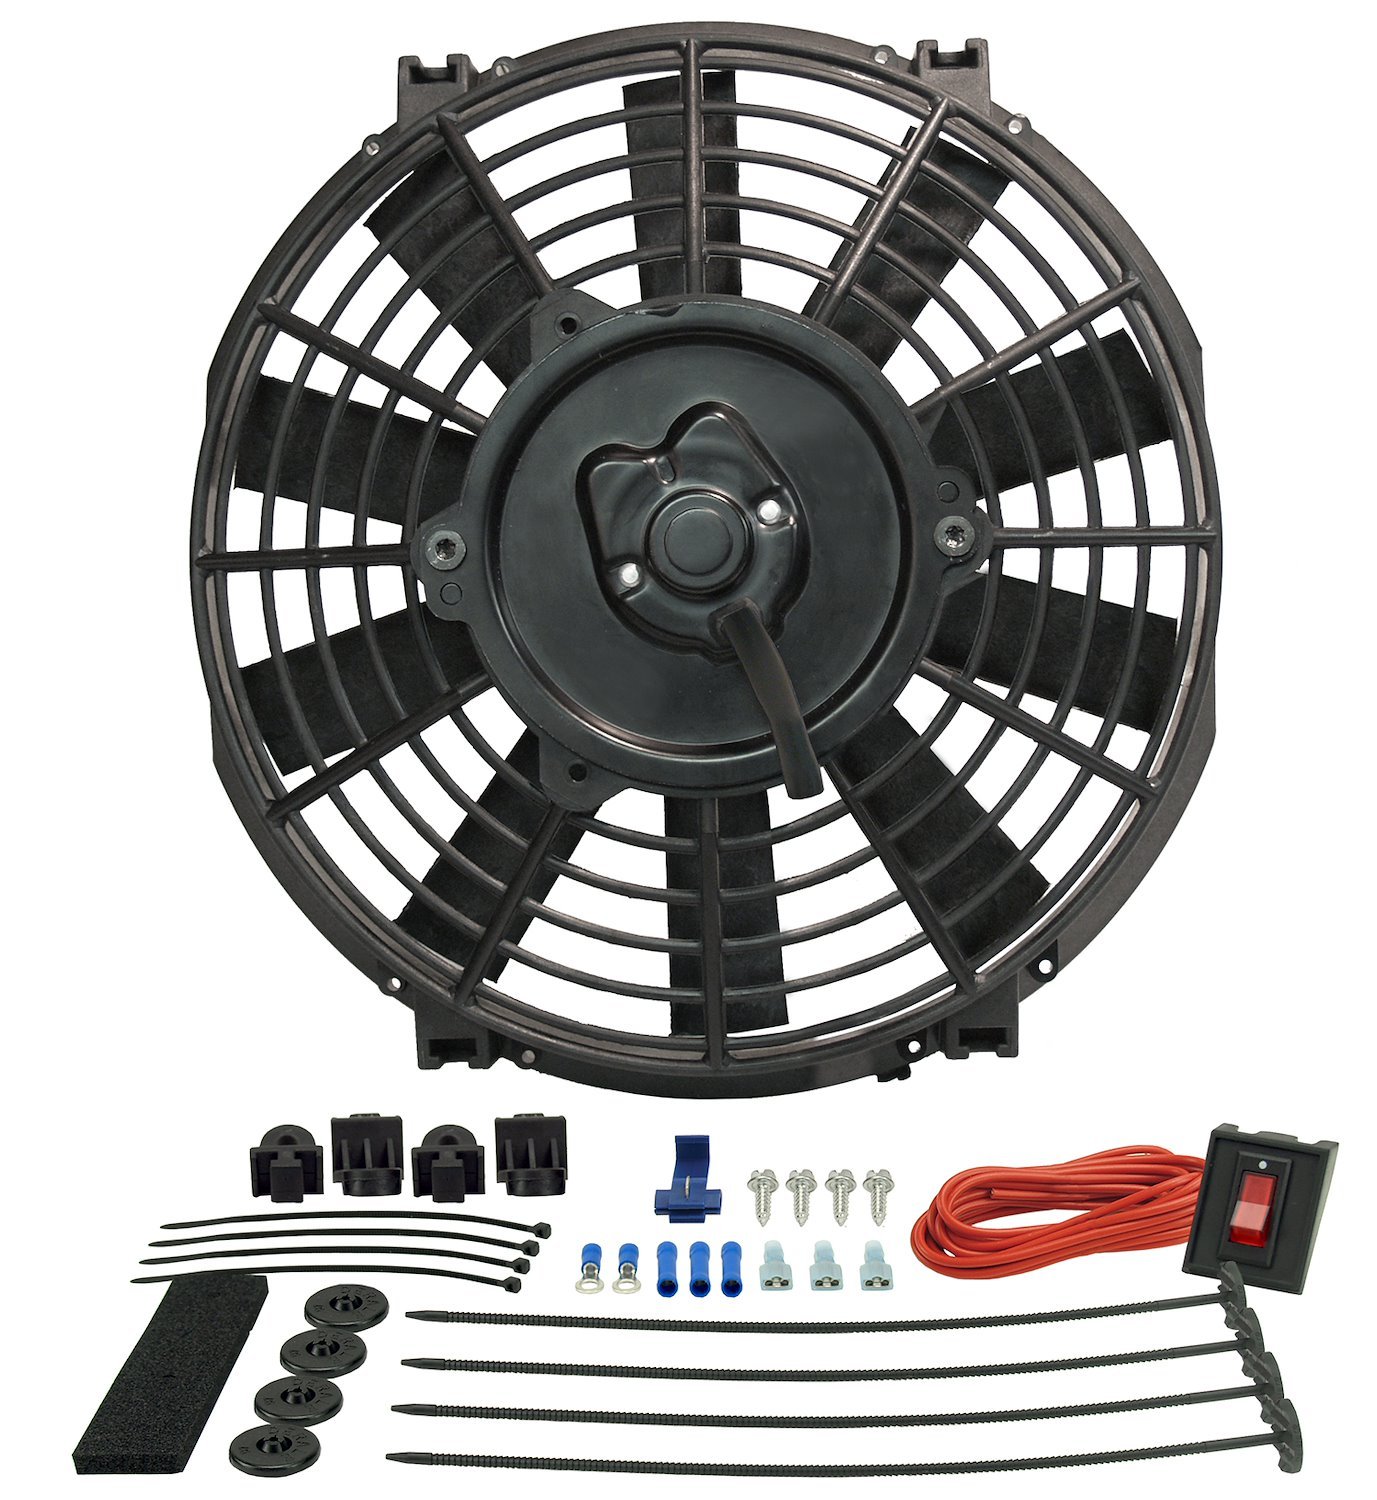 9" Tornado Electric Fan - Premium Hardware Kit 570 CFM